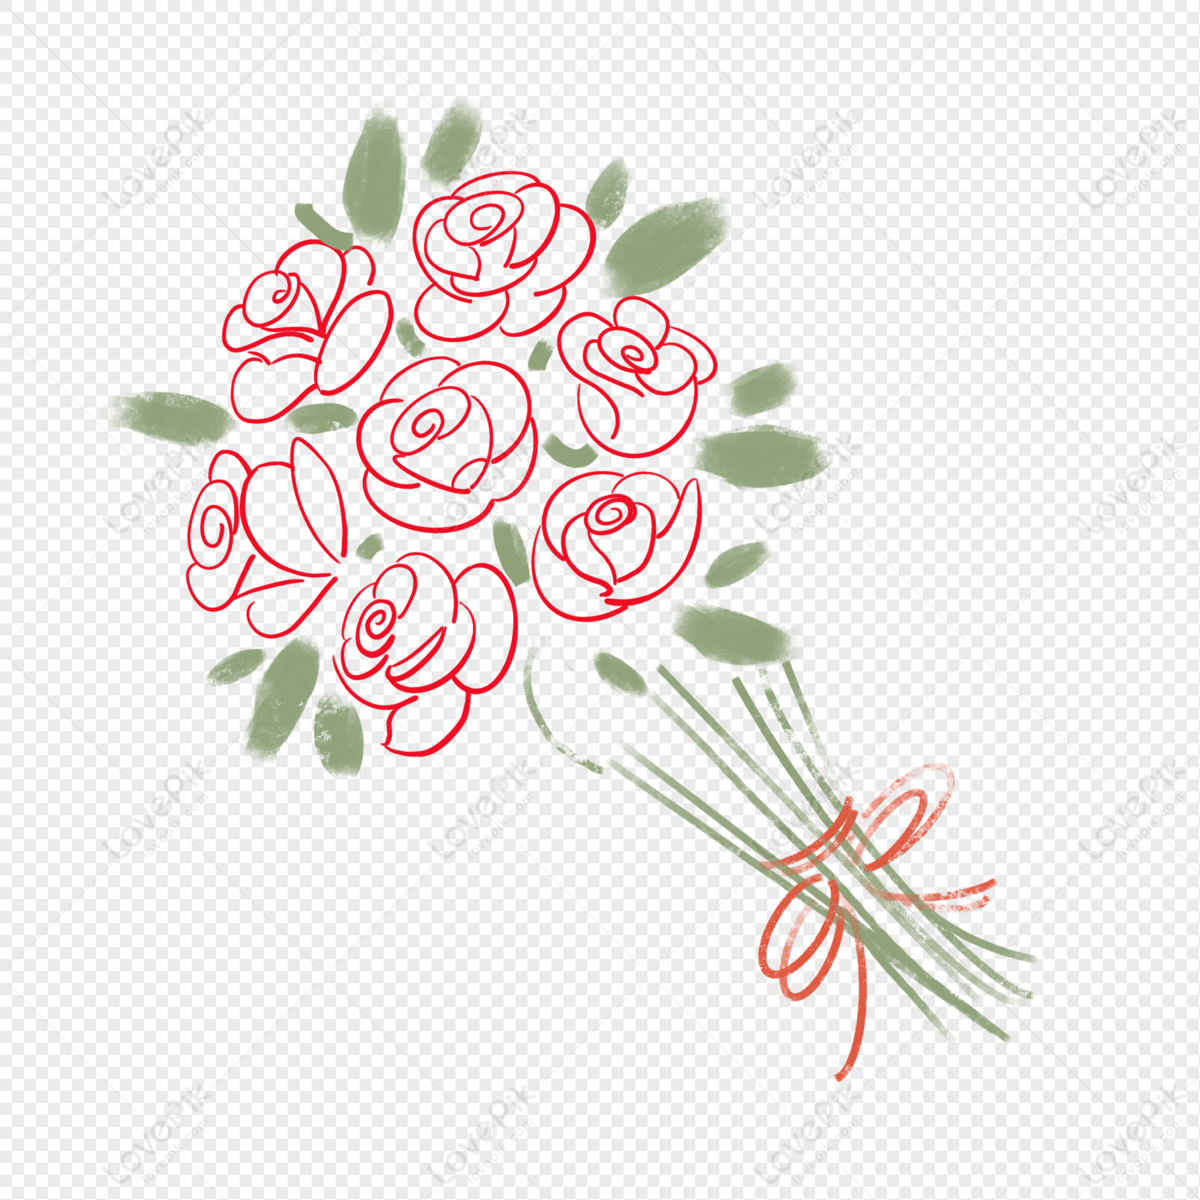 Hướng dẫn cách vẽ một bó hoa đơn giản cho quà tặng thêm ý nghĩa